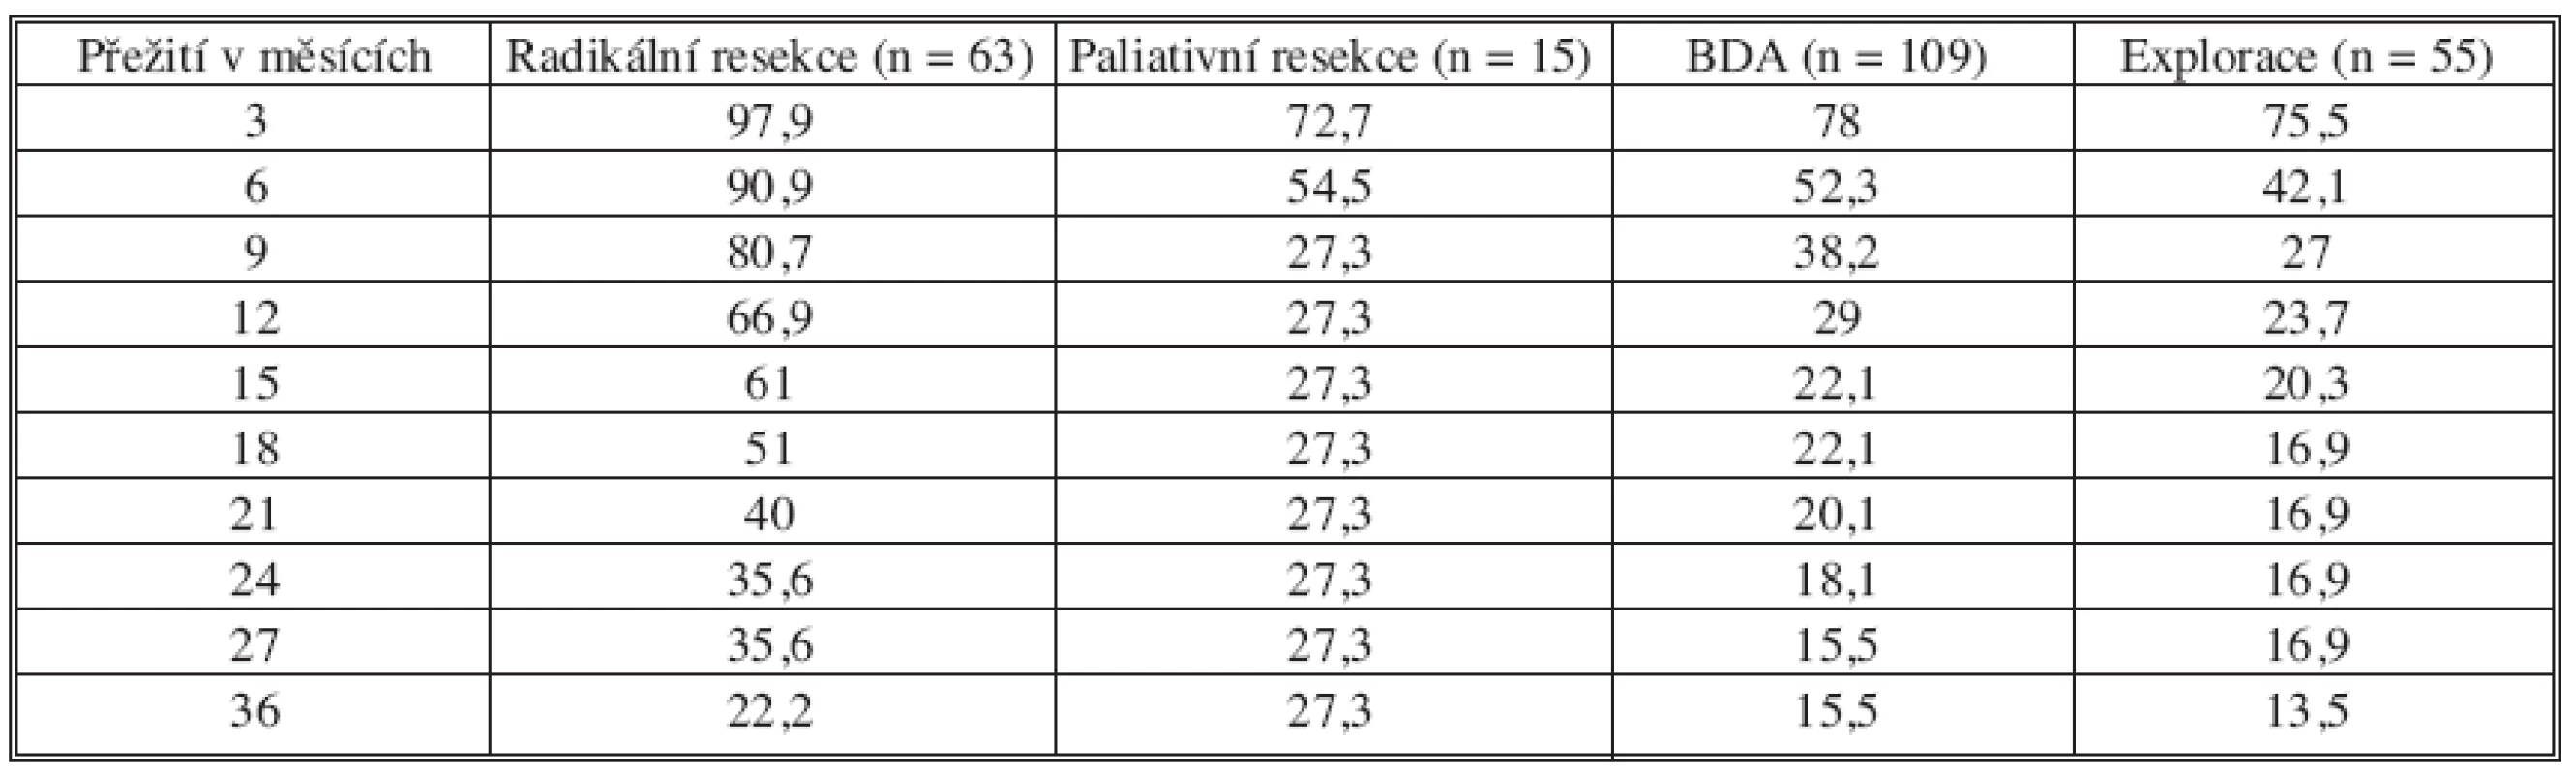 Přežívání pacientů po radikální a paliativní resekci, biliodigestivní anastomóze a exploraci (n = 187)
Tab. 5. Patient survival after radical and palliative resections, biliodigestive anastomoses and explorations (n = 187)